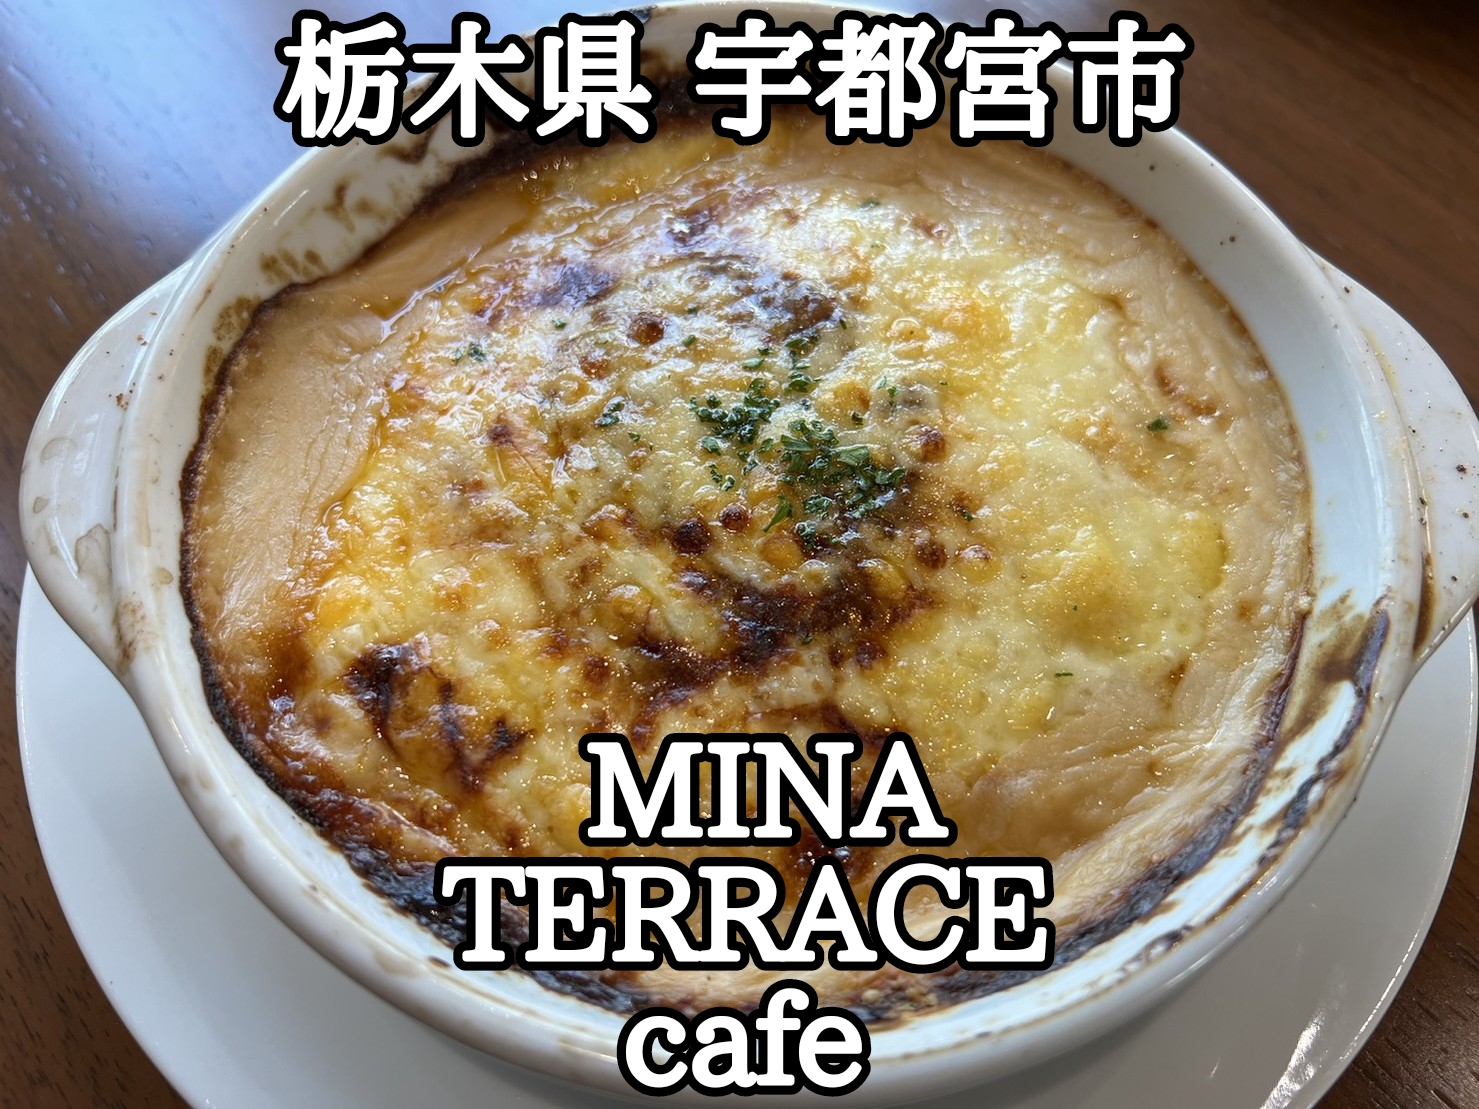 【栃木県】【宇都宮市】「MINA TERRACE cafe」インパで買い物中にカフェランチ